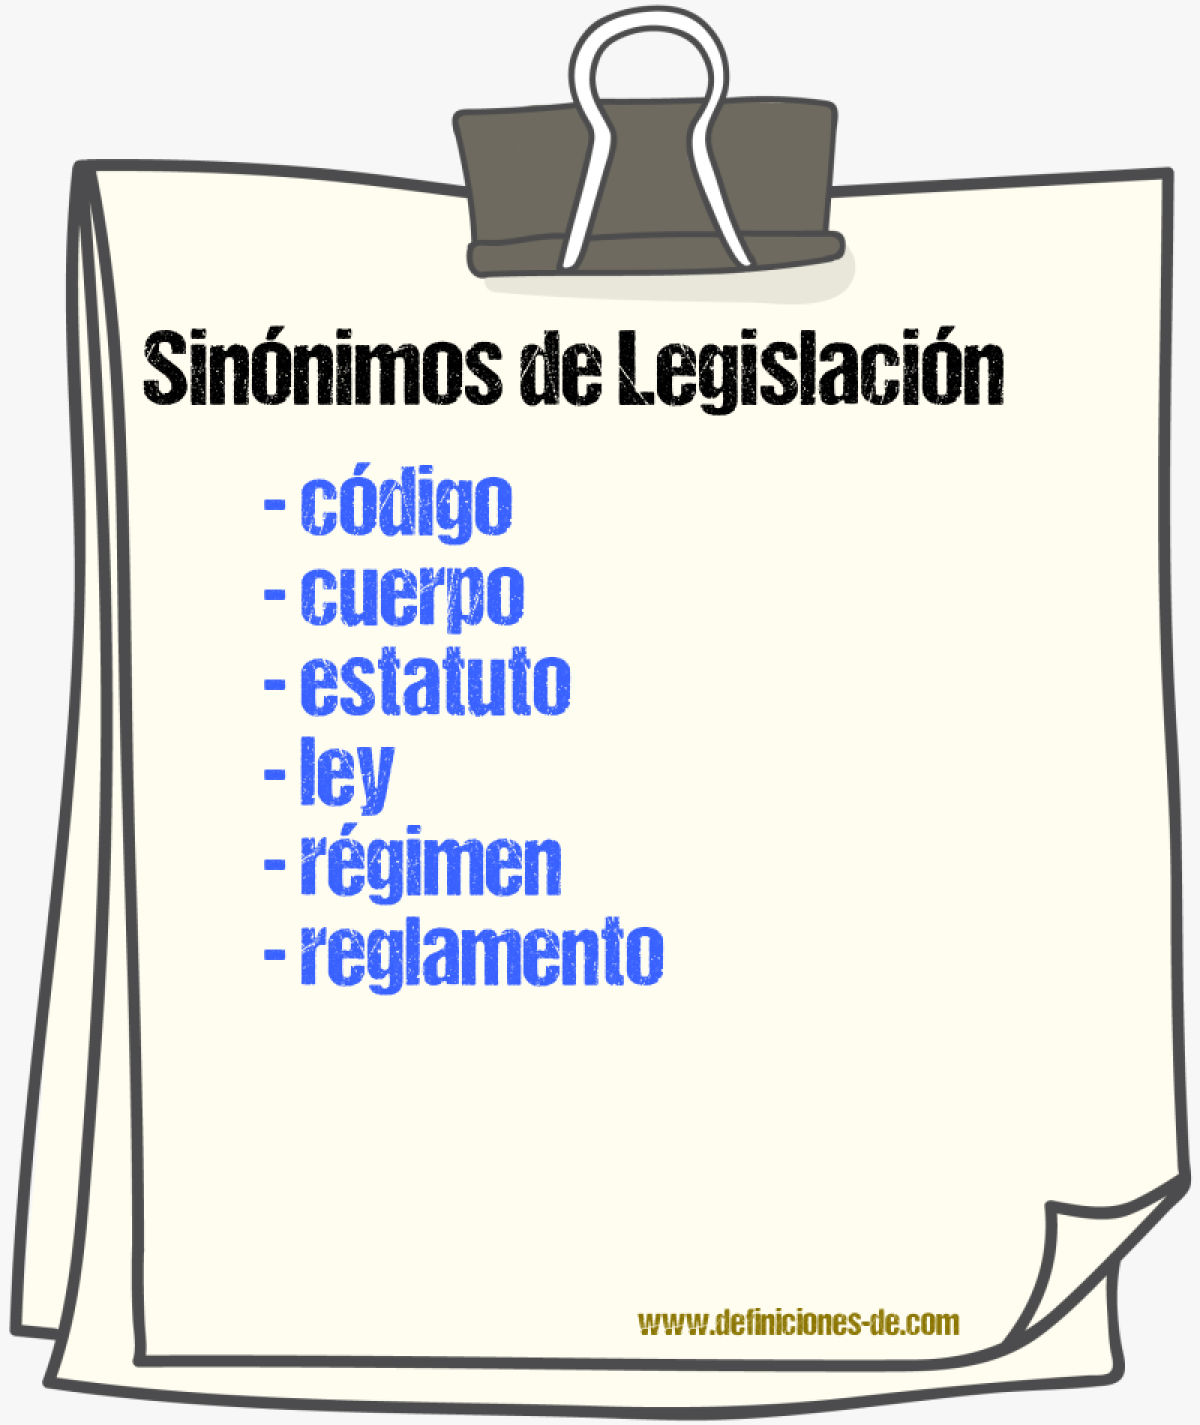 Sinónimos de legislación